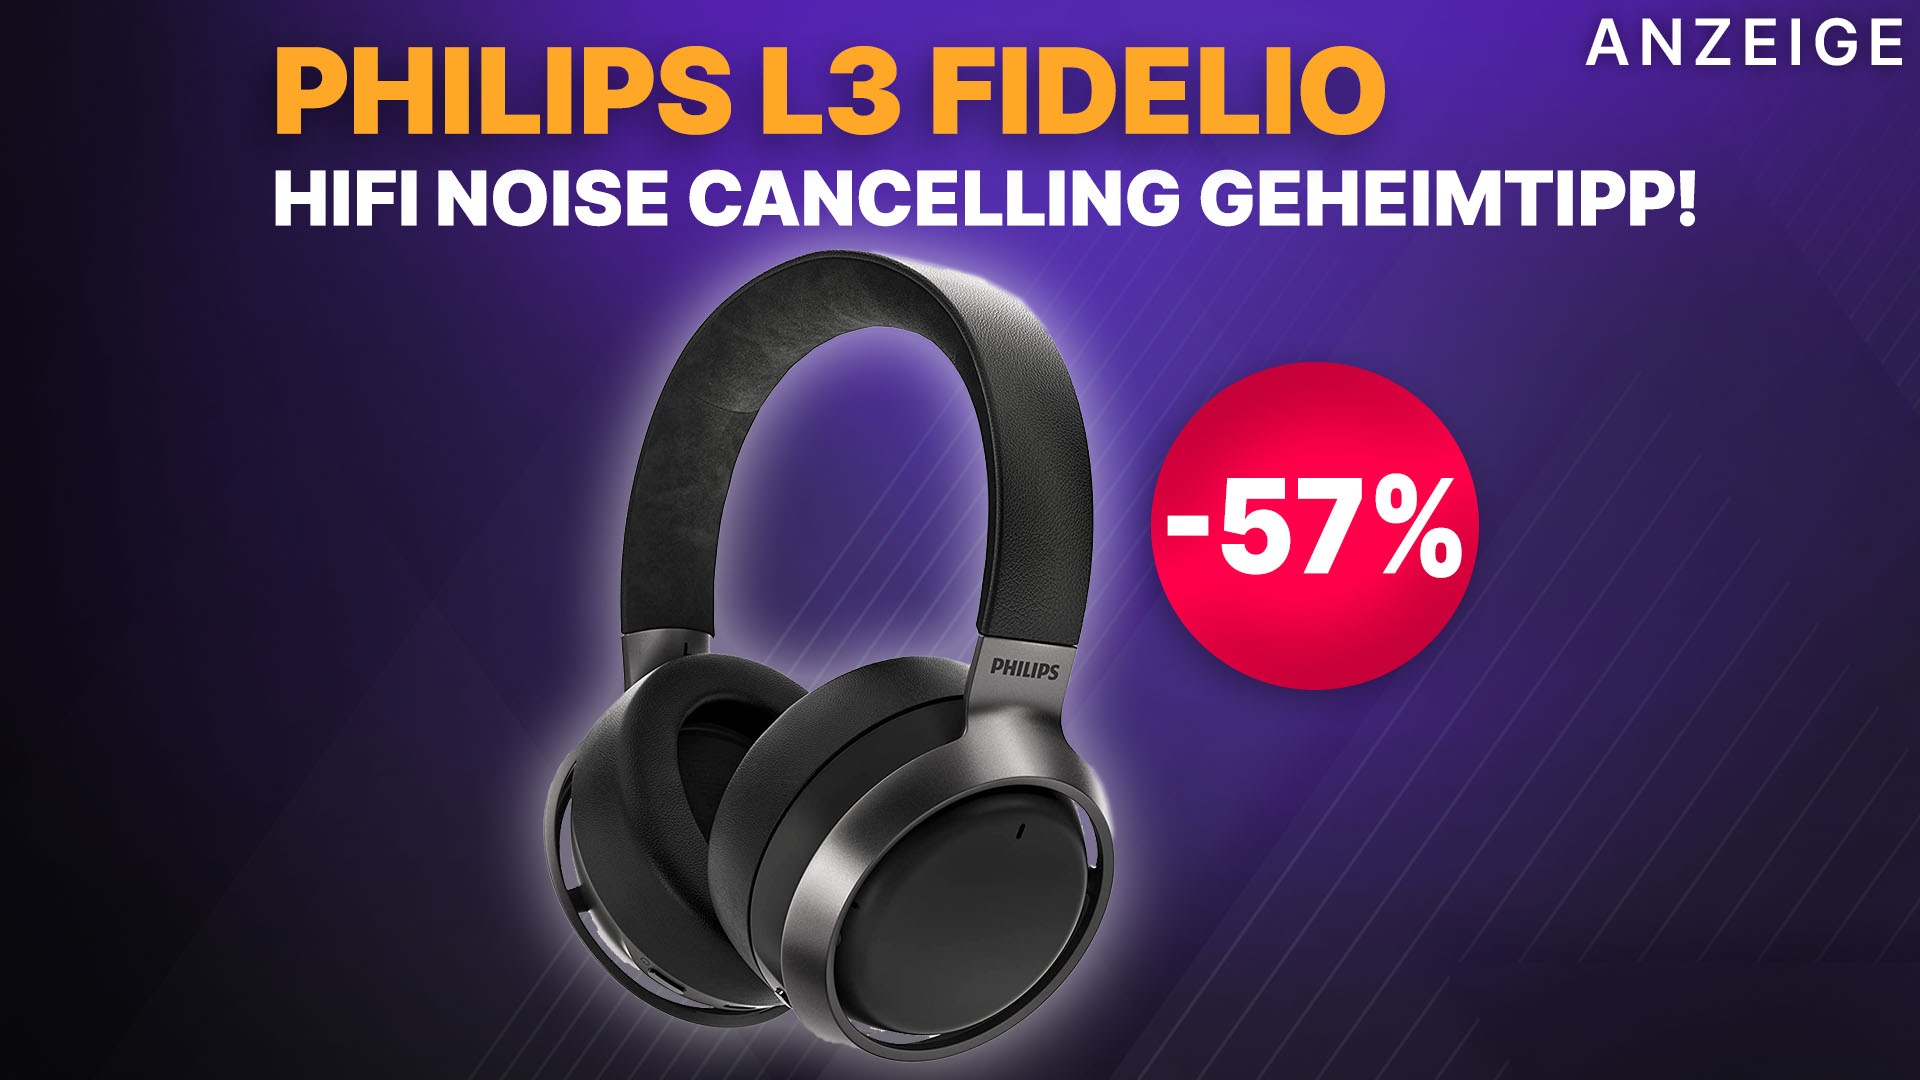 HiFi Noise Cancelling Kopfhörer Geheimtipp Philips L3 bei Headset krass Amazon Preis! Fidelio jetzt reduziert halben ANC zum